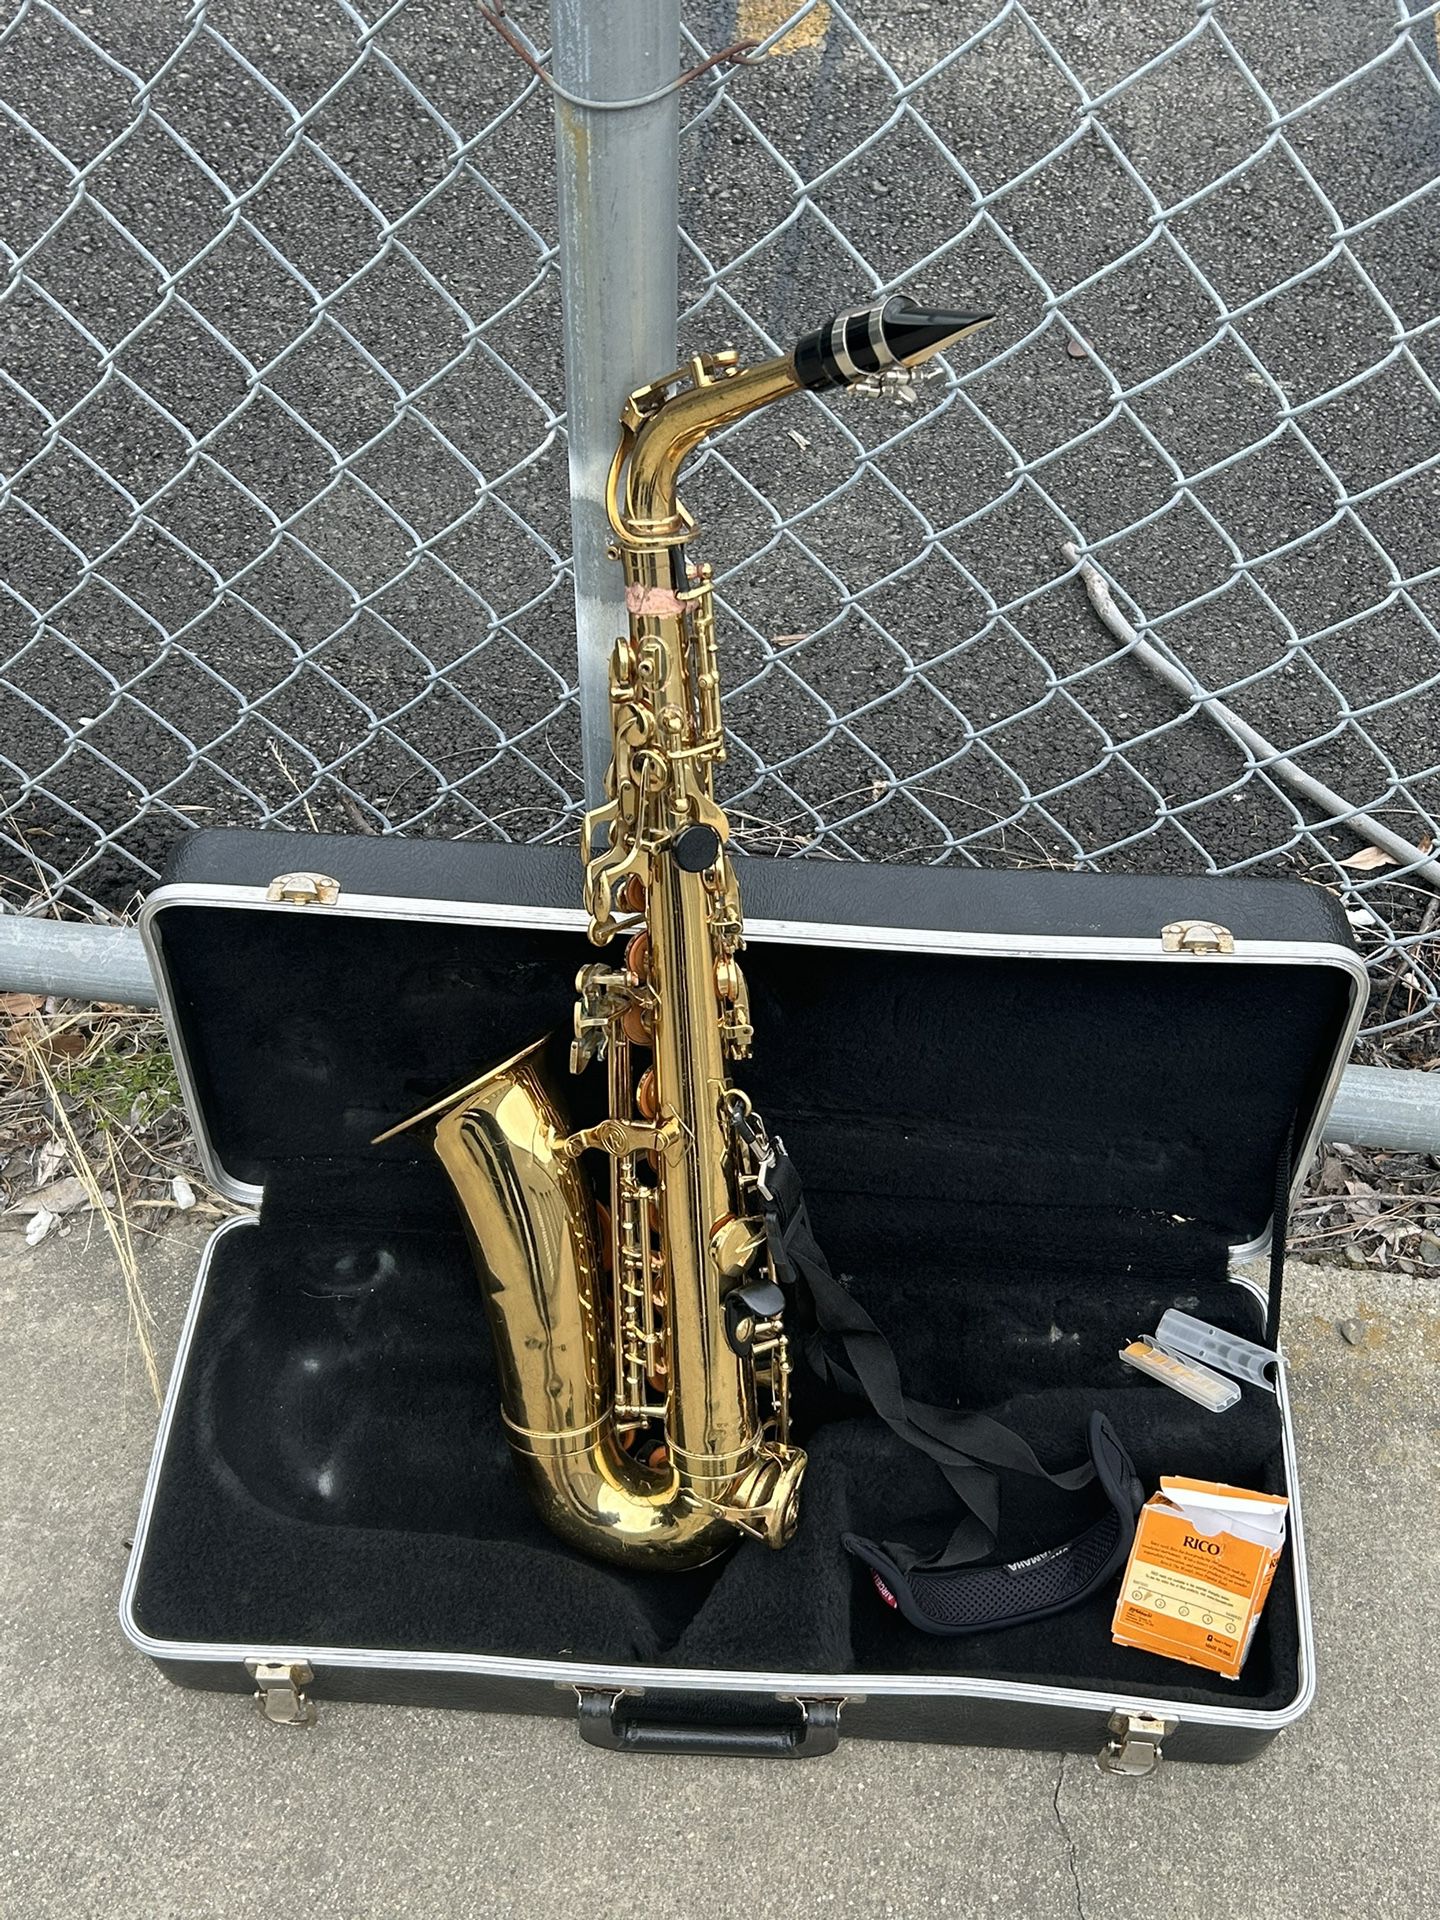 Antigua Winds Saxophone W/ Case & Accessories